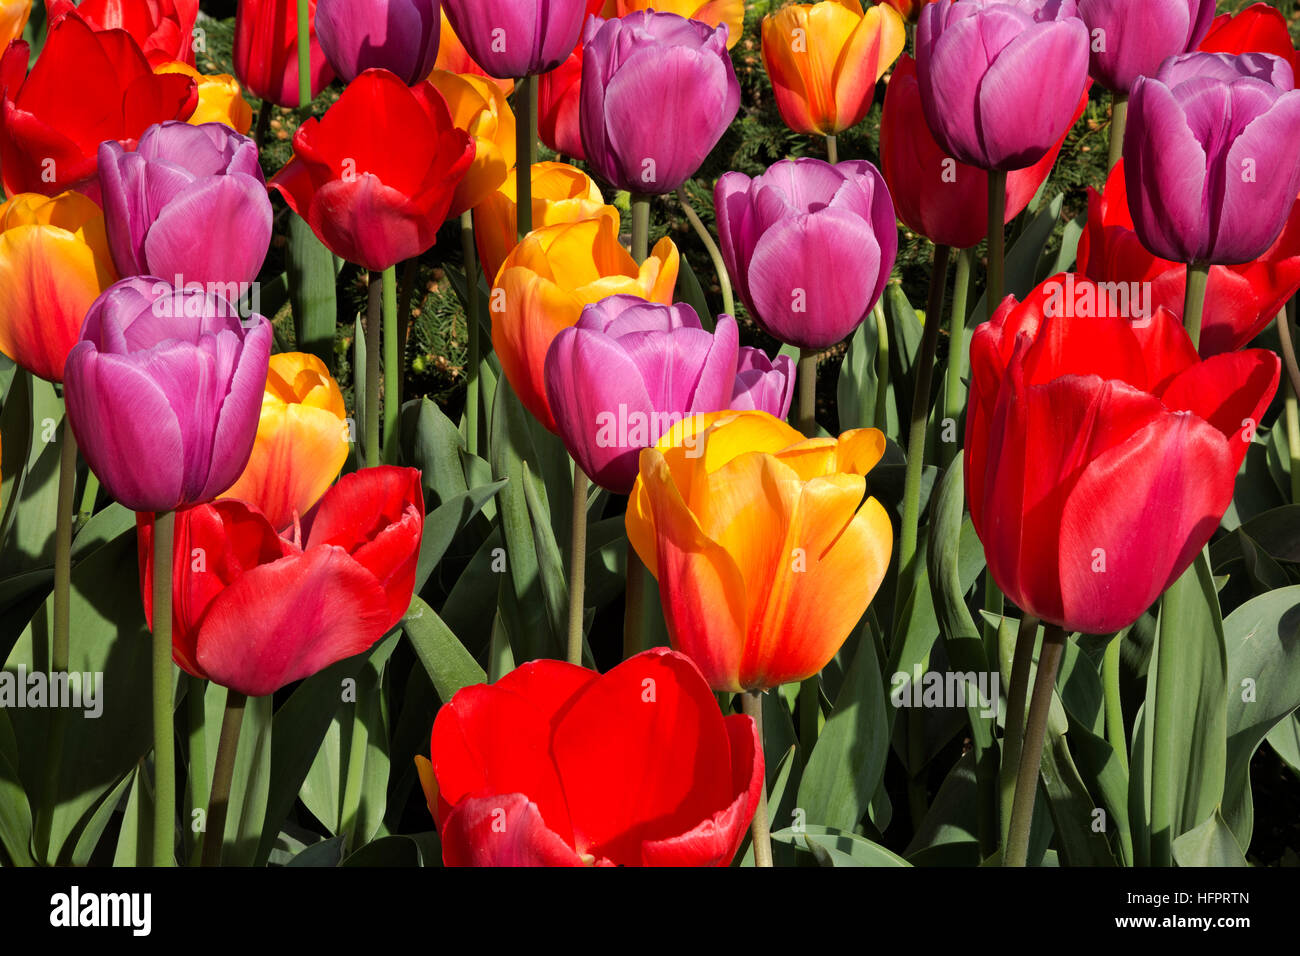 WA13058-00... WASHINGTON - ein Beet von Tulpen und Hyazinthen im RoozenGaarde Display Garden für Glühbirnen. Stockfoto